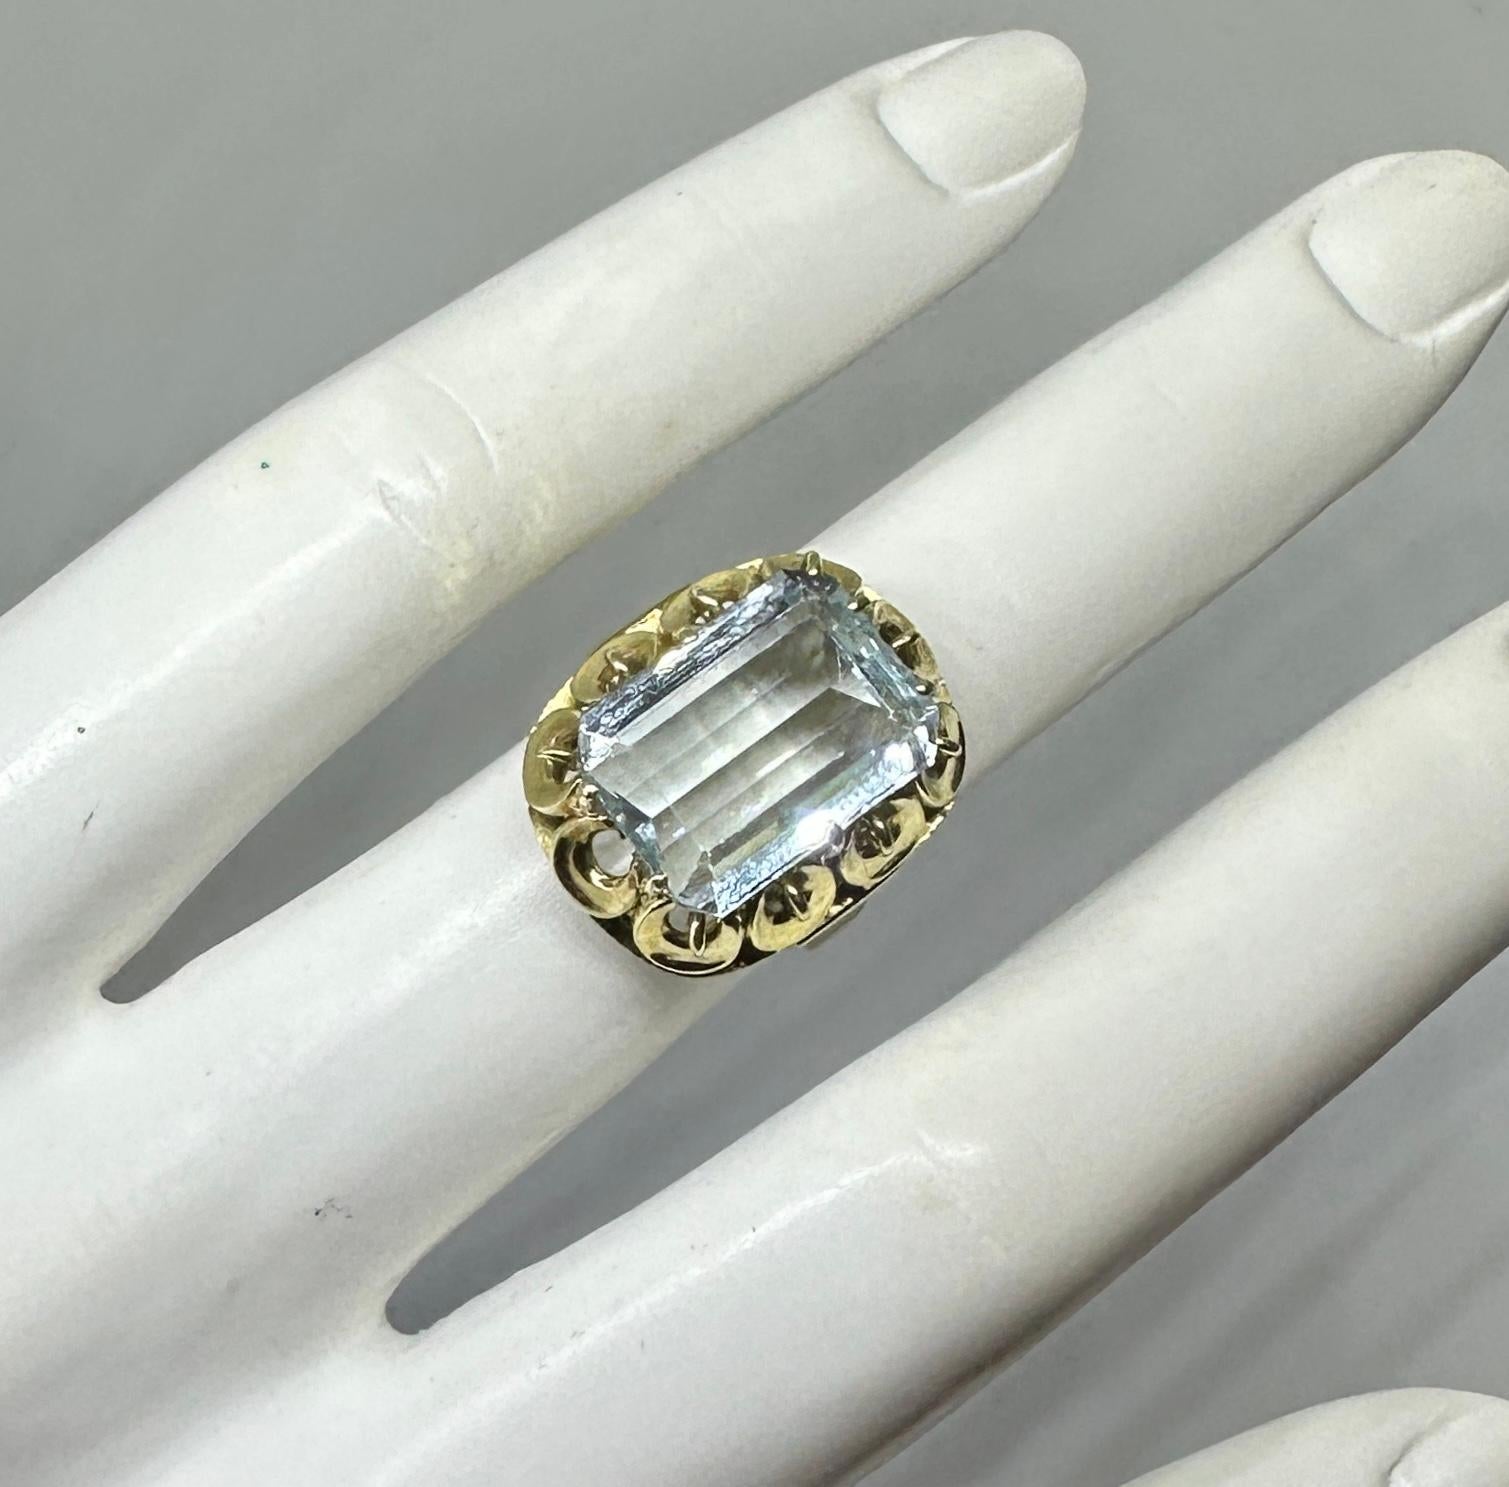 Dies ist eine atemberaubende Retro 5,6 Karat Smaragdschliff Aquamarin Ring in einer 14 Karat Rose Gold Muschel Form Einstellung von großer Schönheit.  Der Ring hat eine wunderschöne 5,6 Karat Emerald Cut Aquamarin Edelstein mit schönen Licht Aqua